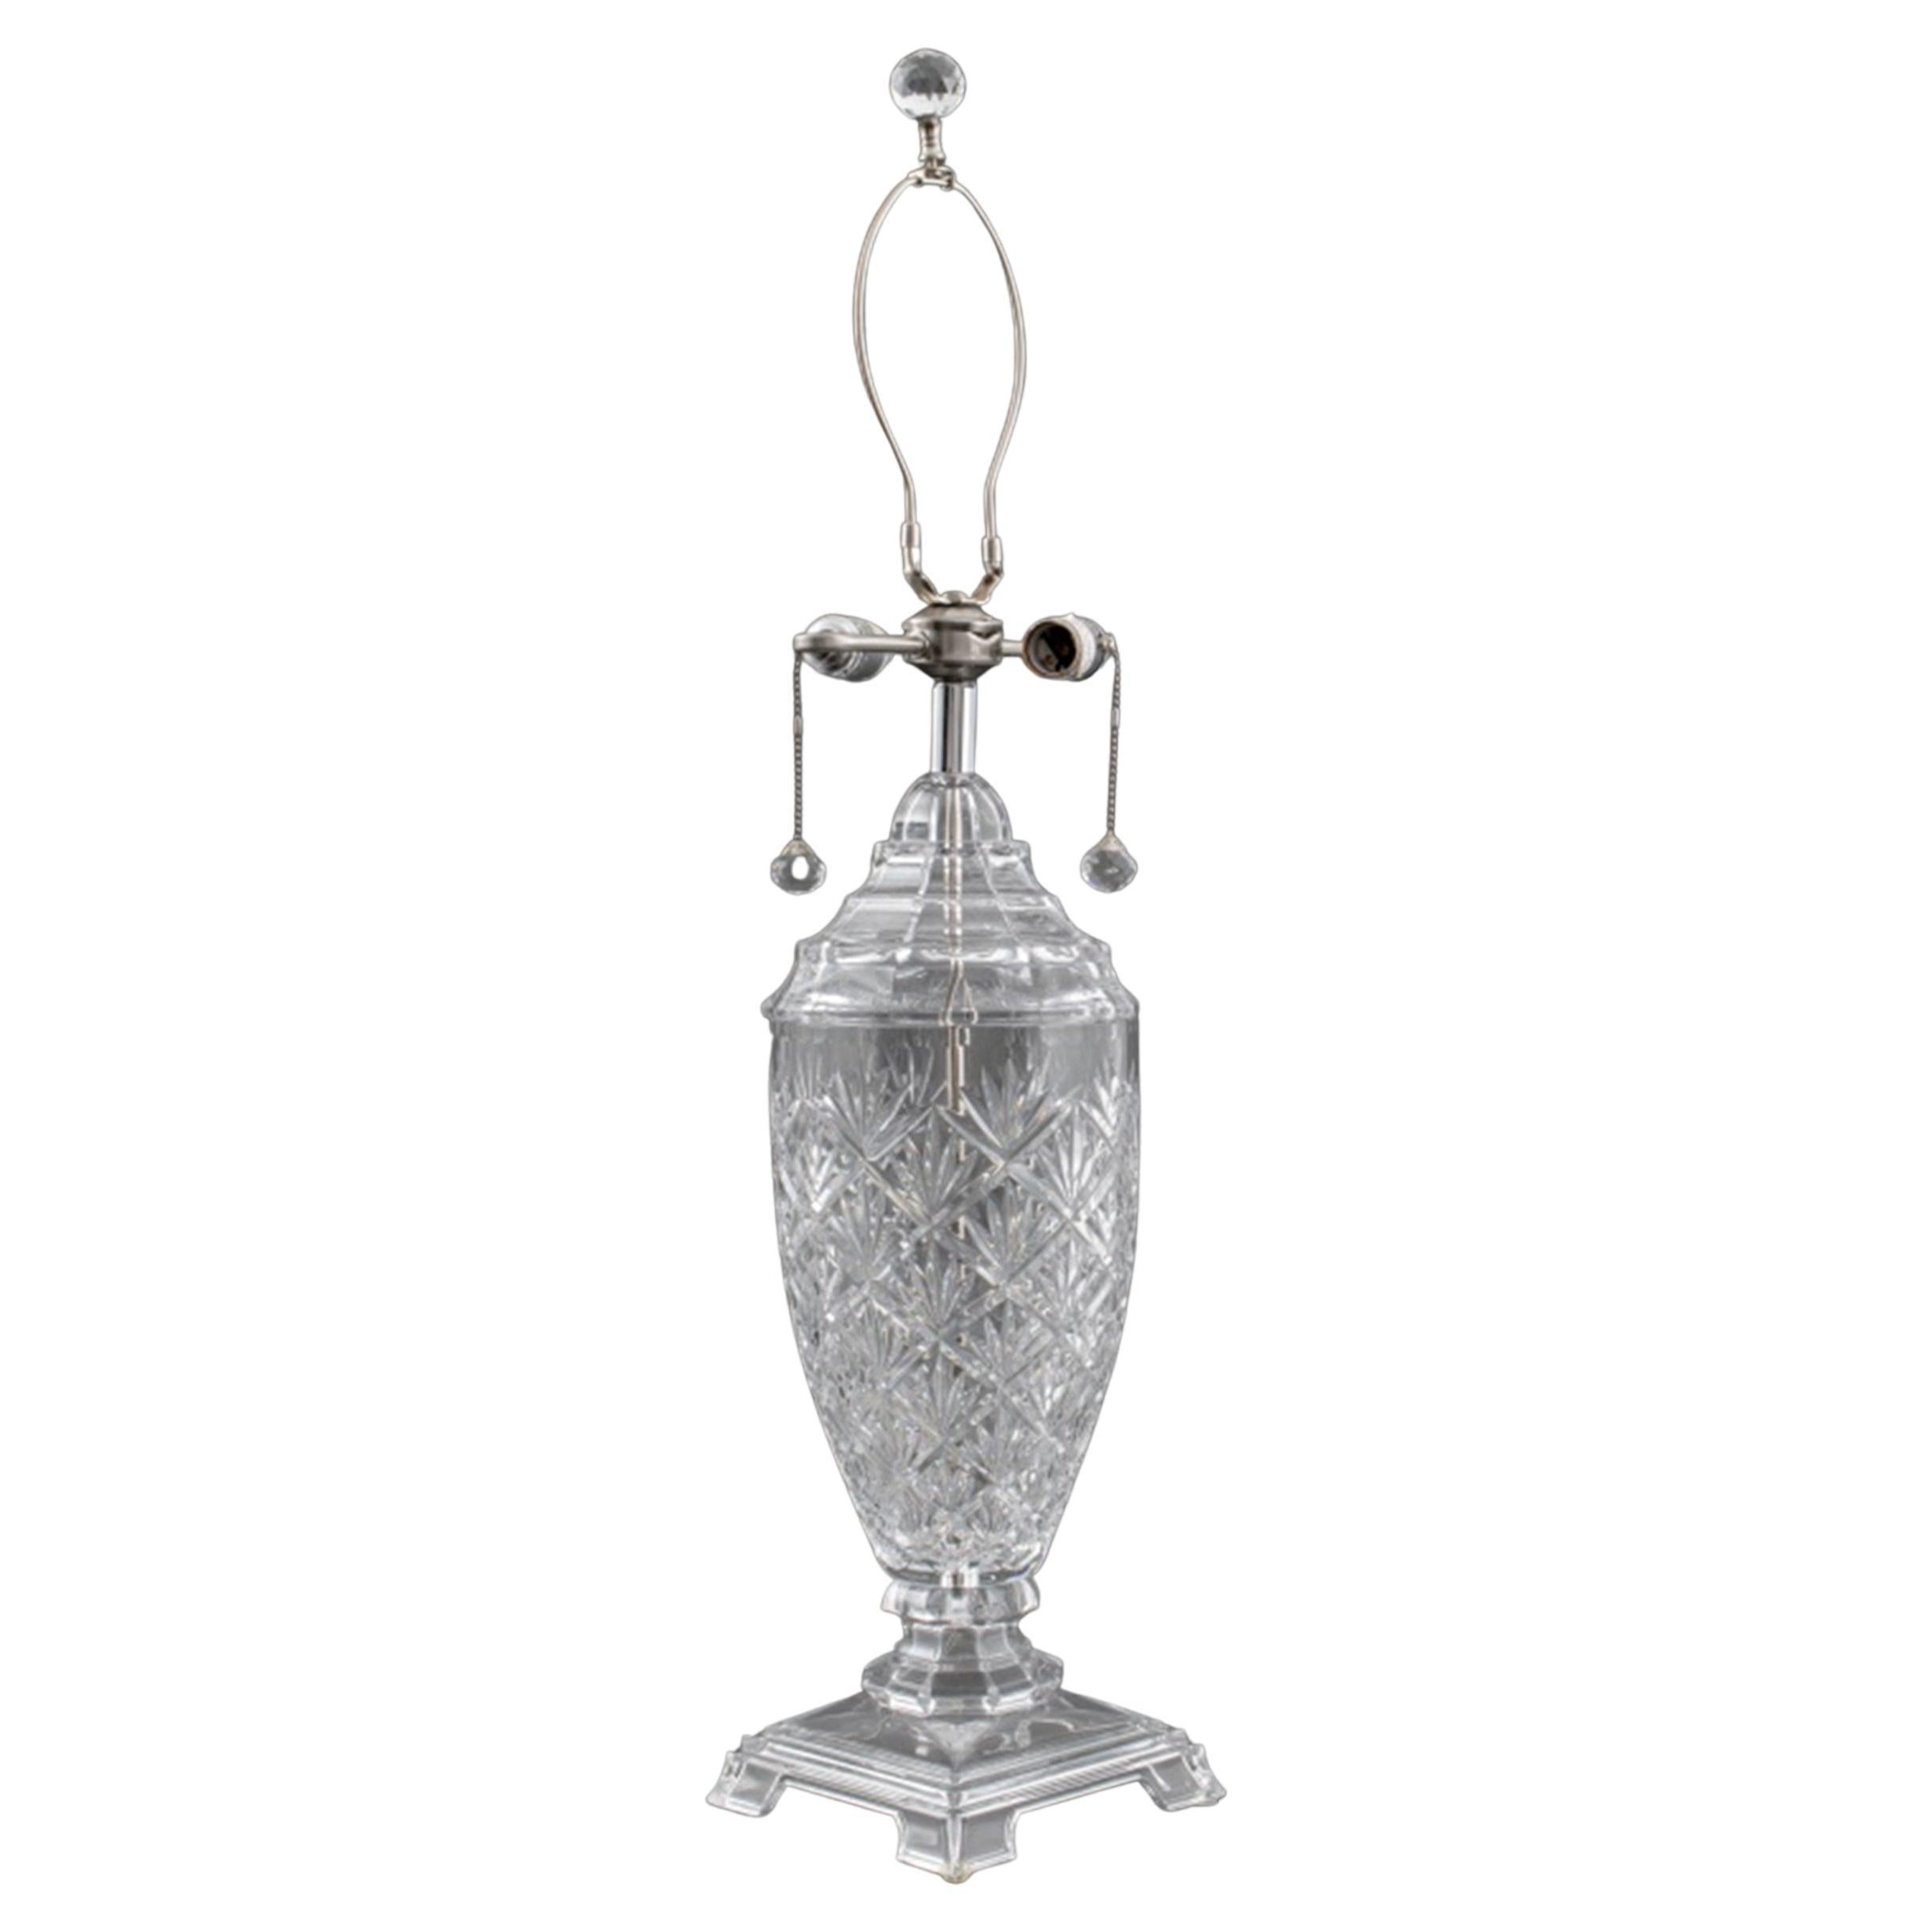 Waterford-Lampe aus geschliffenem Kristall im klassischen Revival-Stil